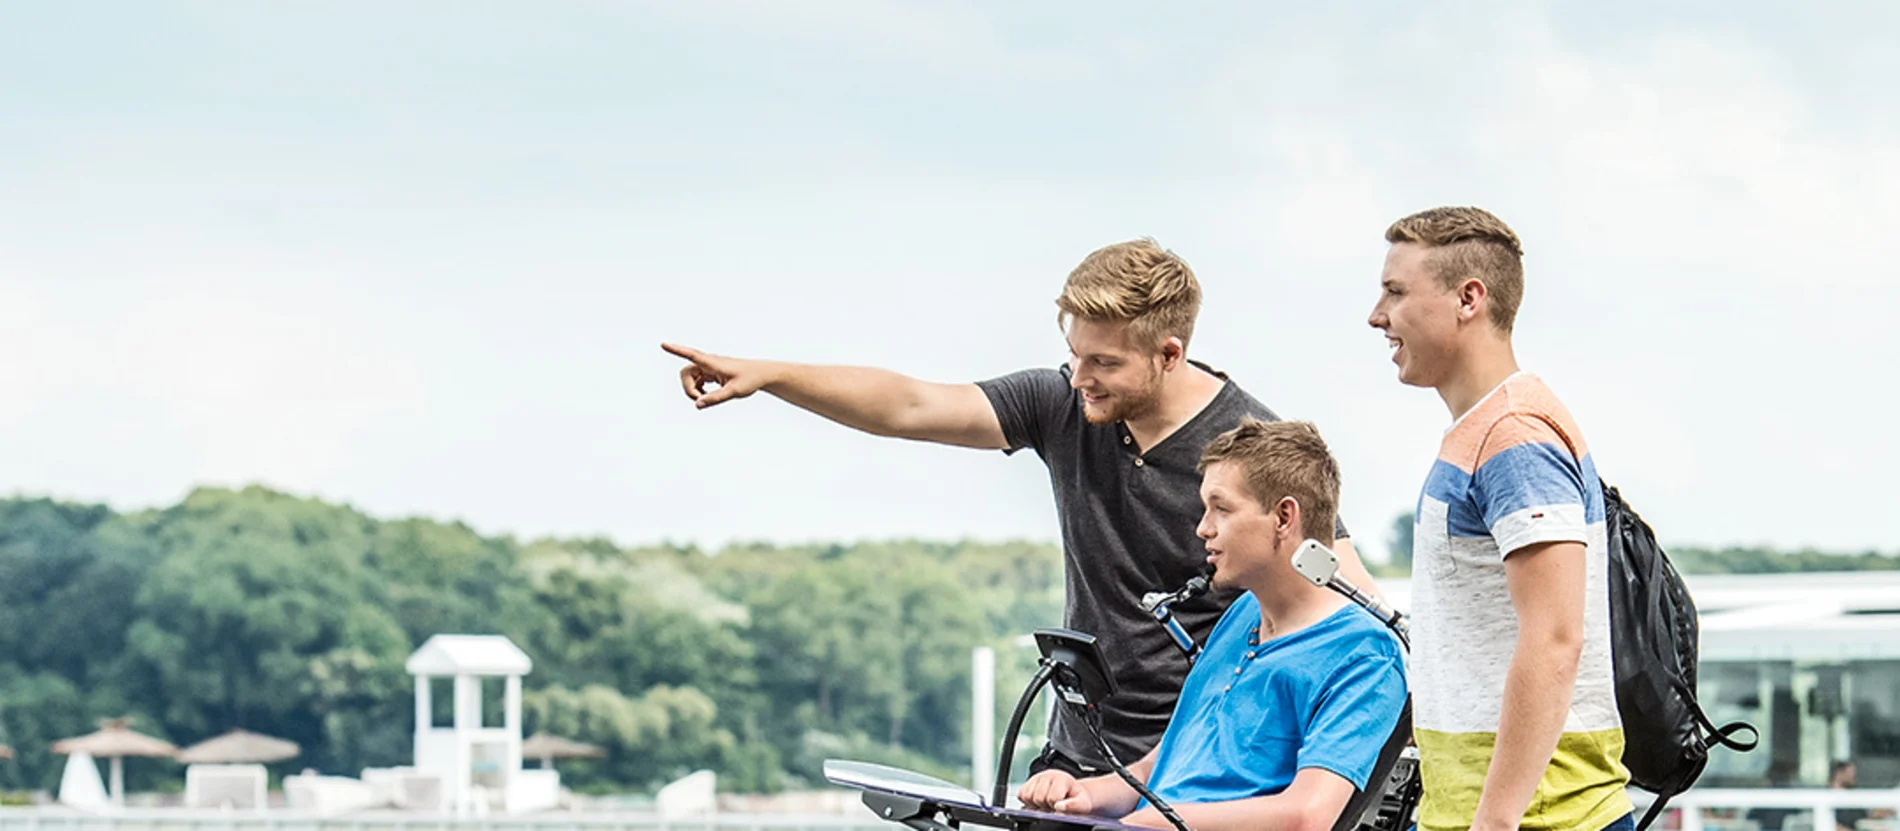 Drei junge Männer, einer davon im Rollstuhl, stehen an einem See und beobachten etwas in der Ferne.